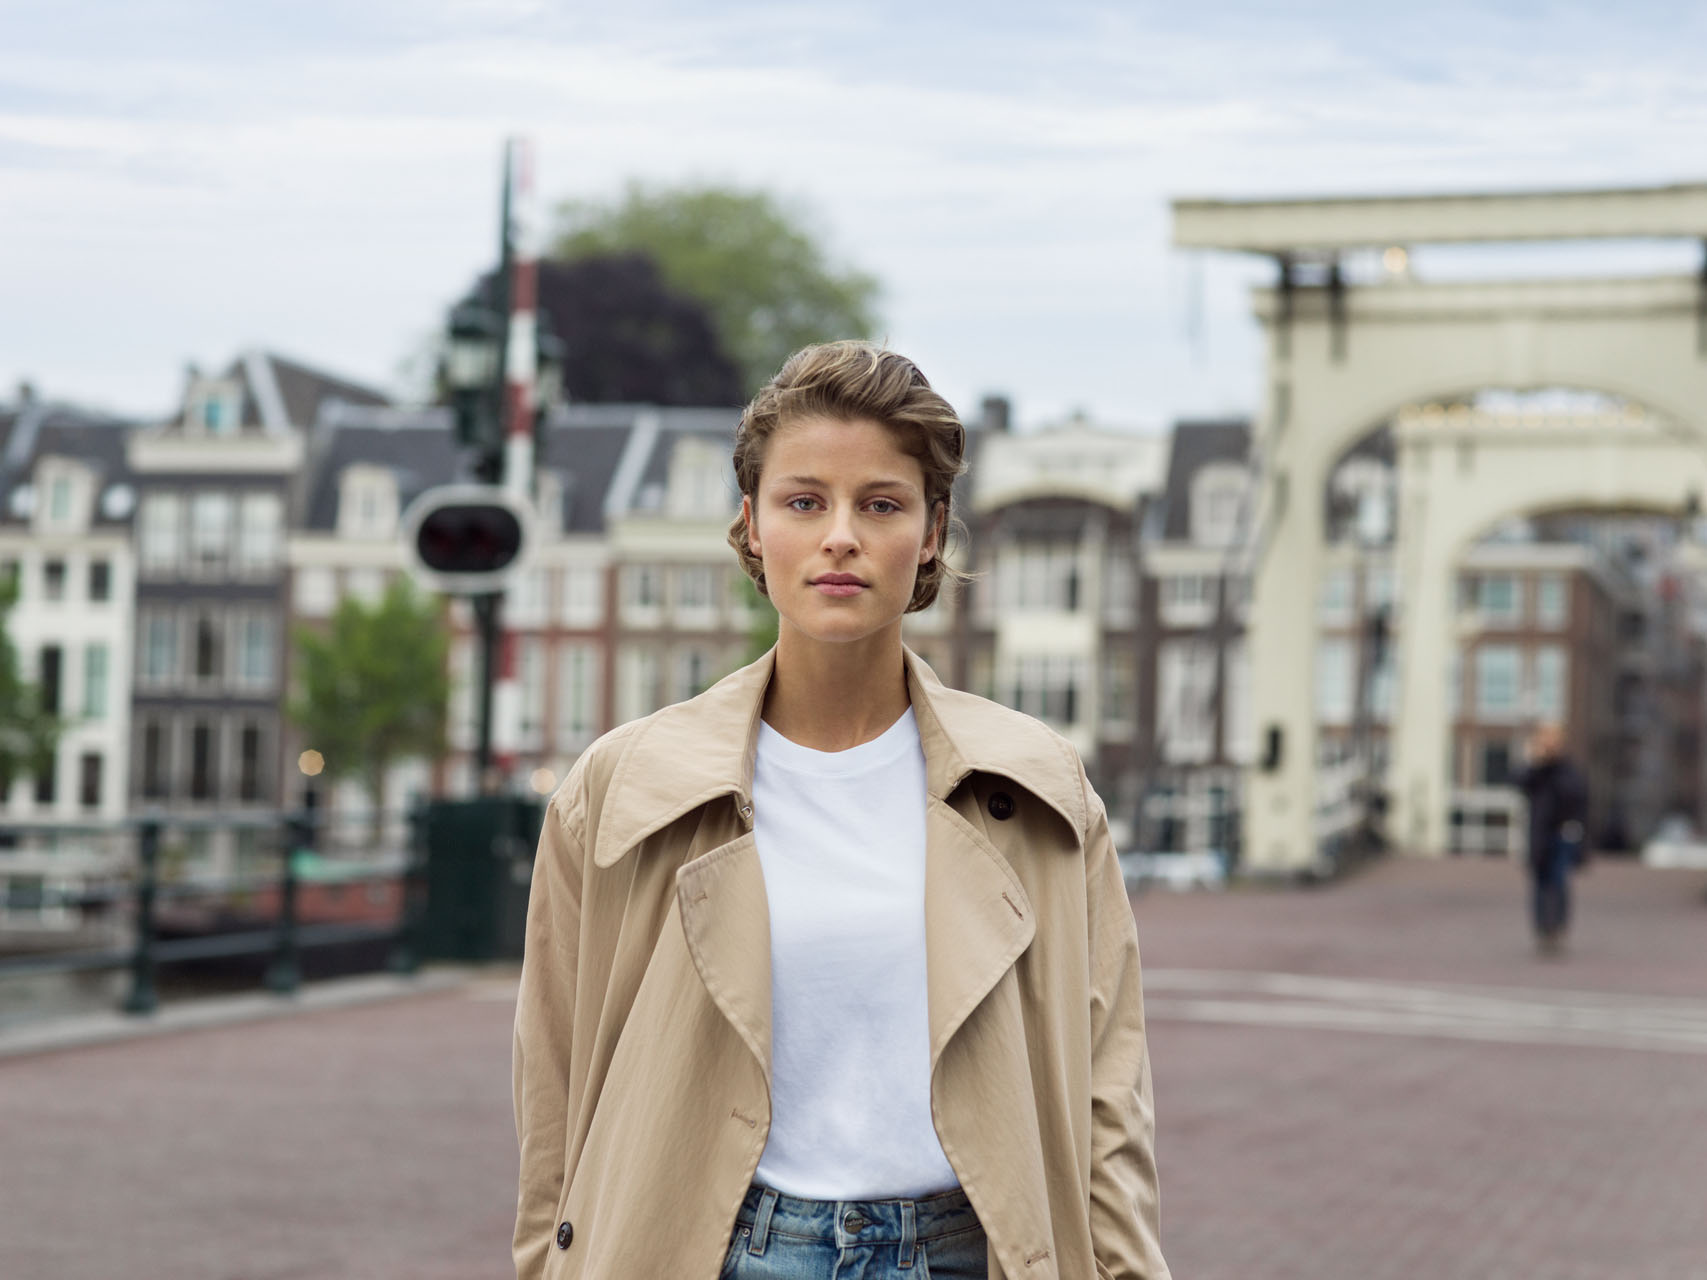 Meisje in jas op straat in Amsterdam | Vattenfall energie